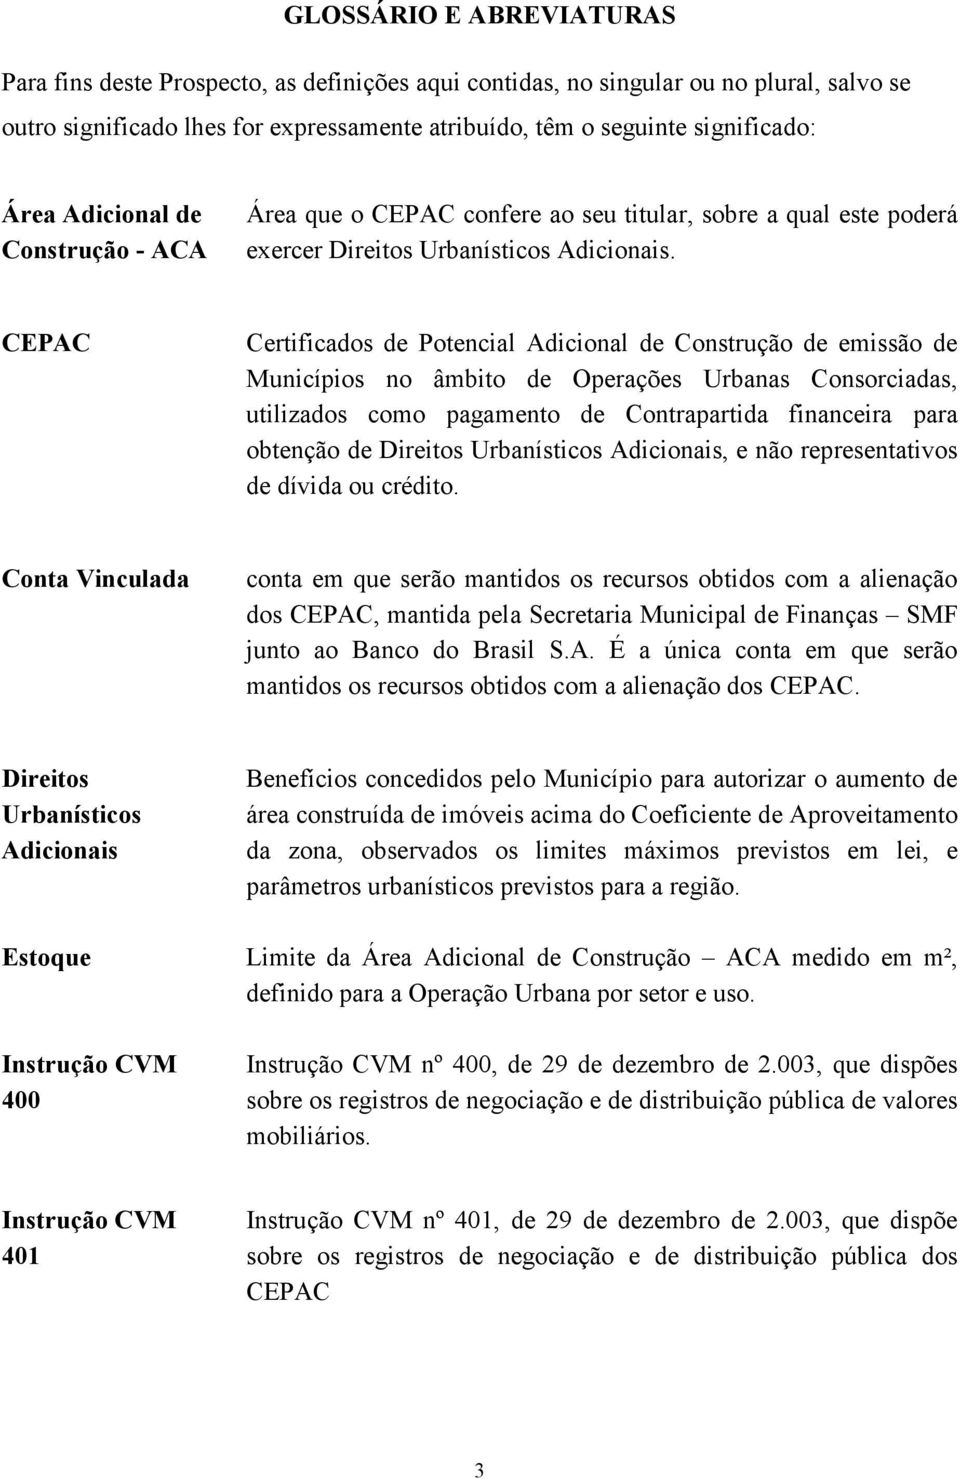 CEPAC Certificados de Potencial Adicional de Construção de emissão de Municípios no âmbito de Operações Urbanas Consorciadas, utilizados como pagamento de Contrapartida financeira para obtenção de